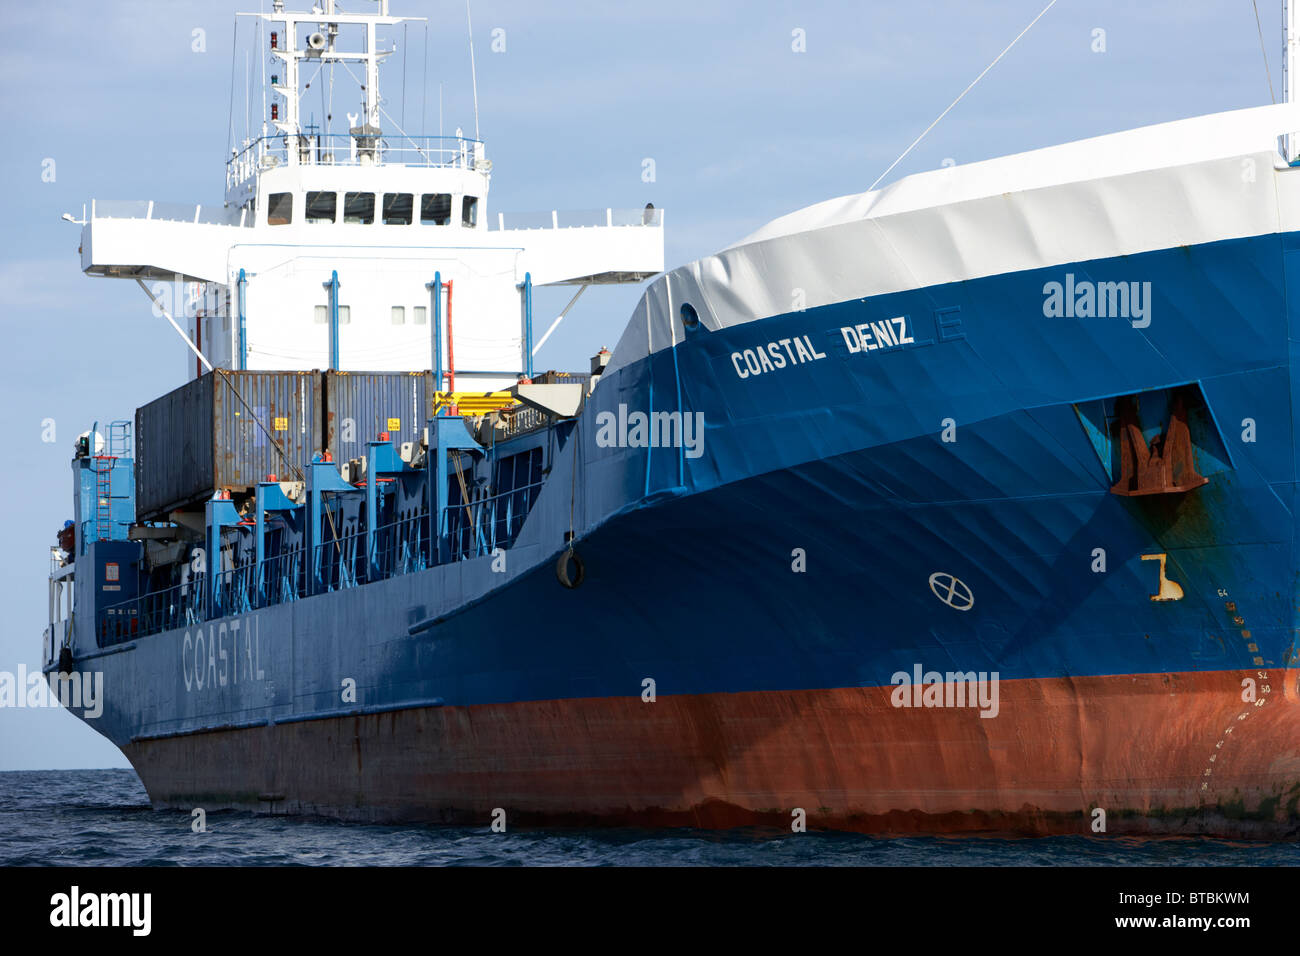 coastal deniz dry cargo hazard a major ship at anchor in coastal waters of the uk Stock Photo